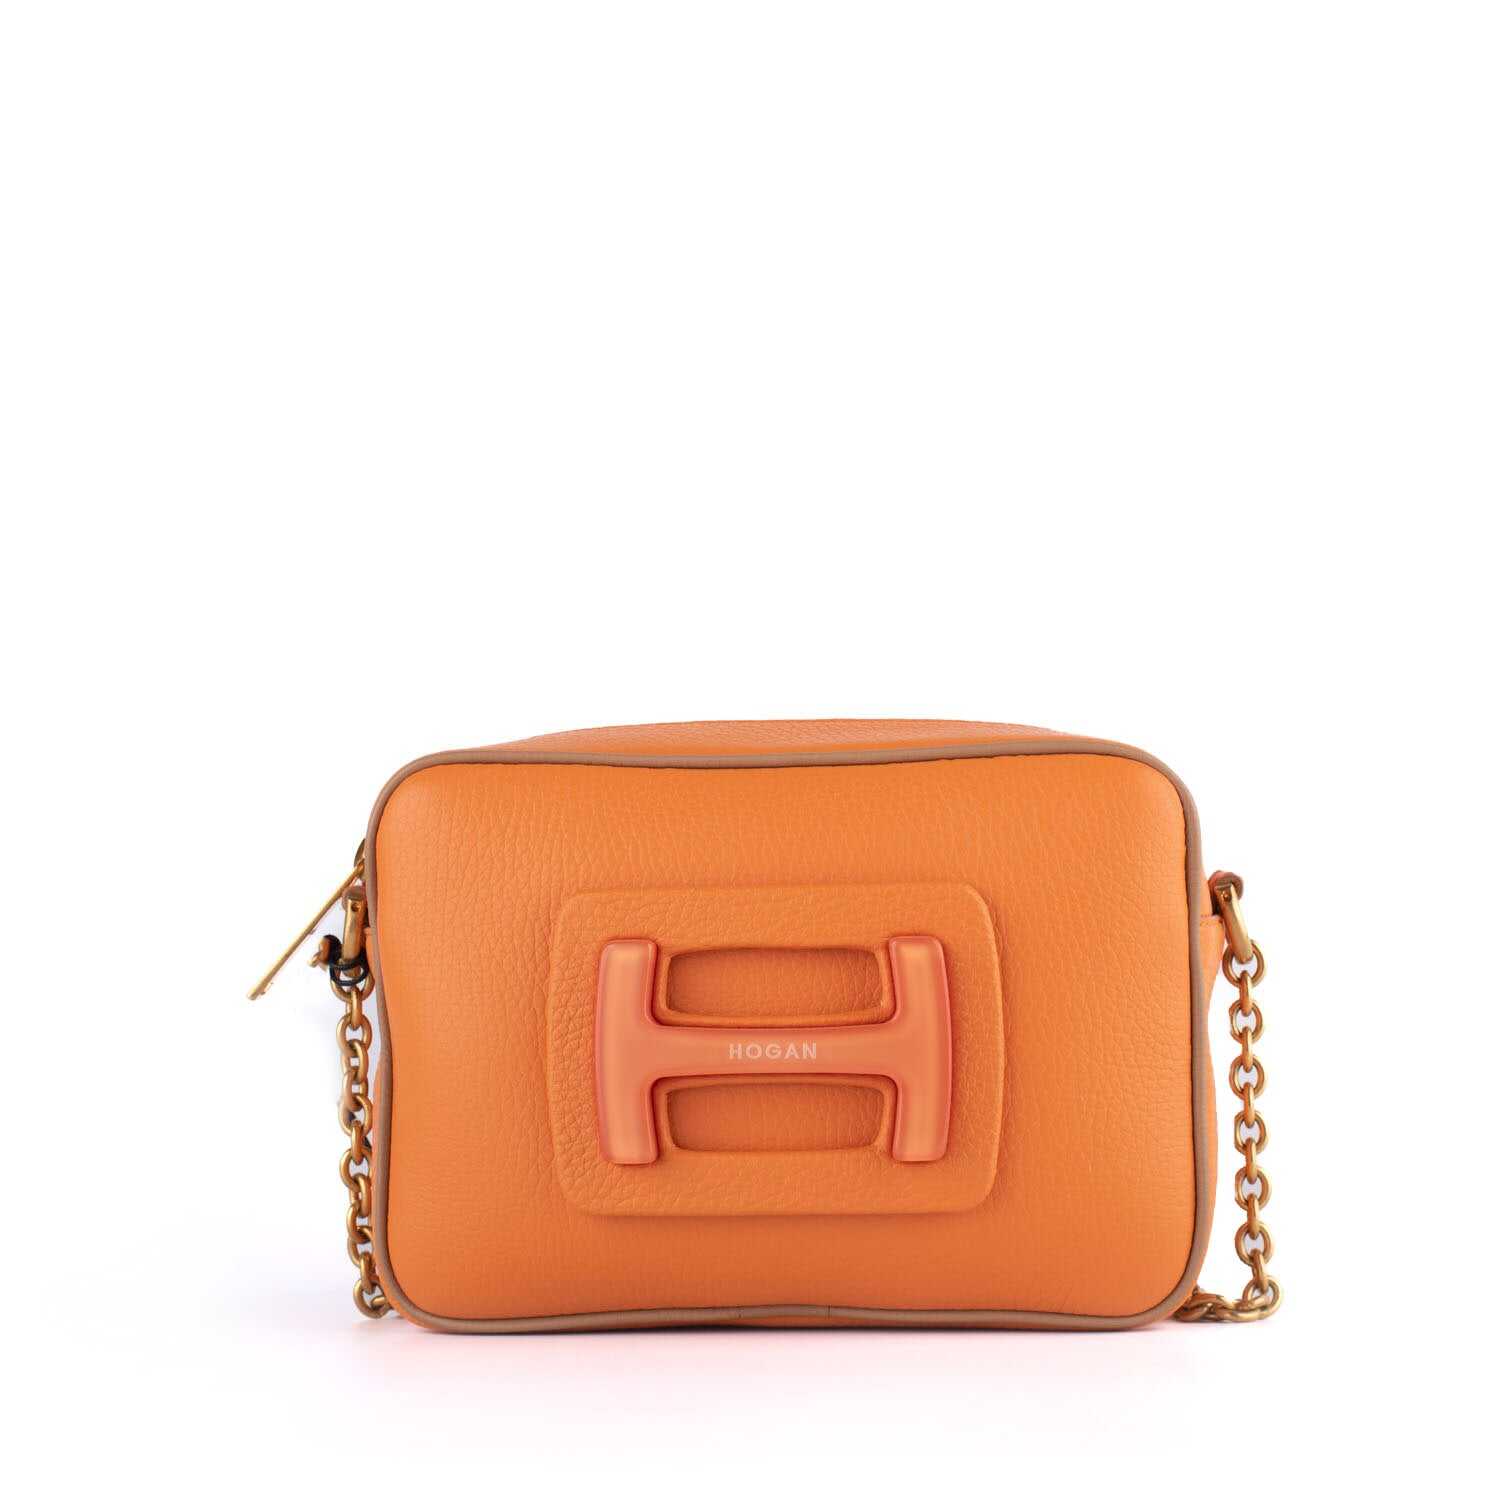 Hogan HOGAN Camera bag shoulder bag in orange grained leather ORANGE